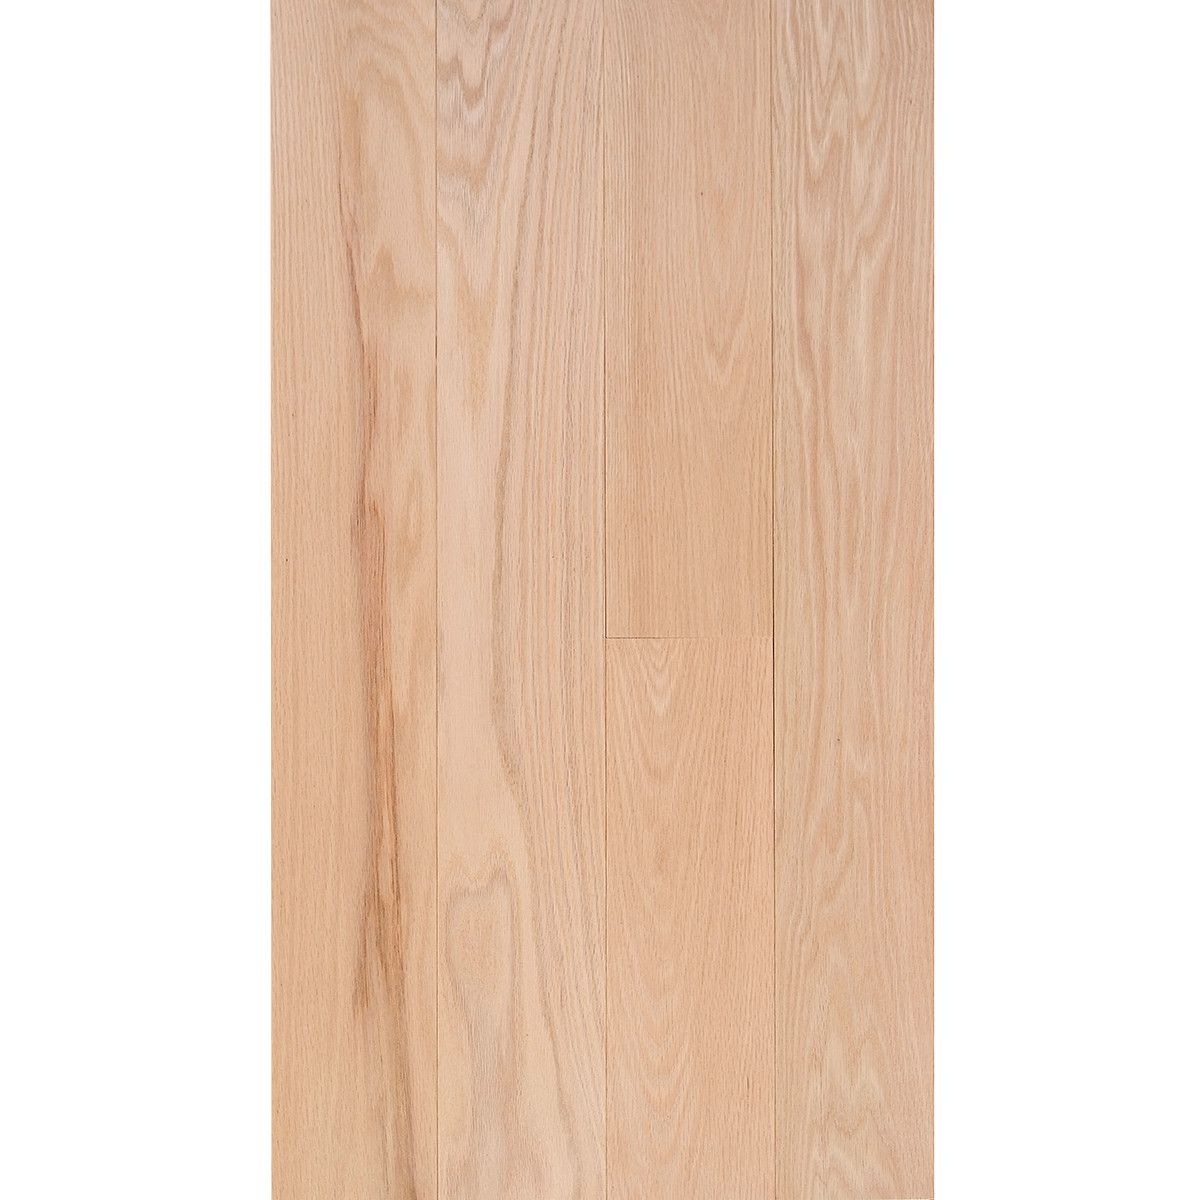 unfinished oak hardwood flooring for sale of red oak 3 4 x 5 select grade flooring throughout fs 5 redoak select em flooring